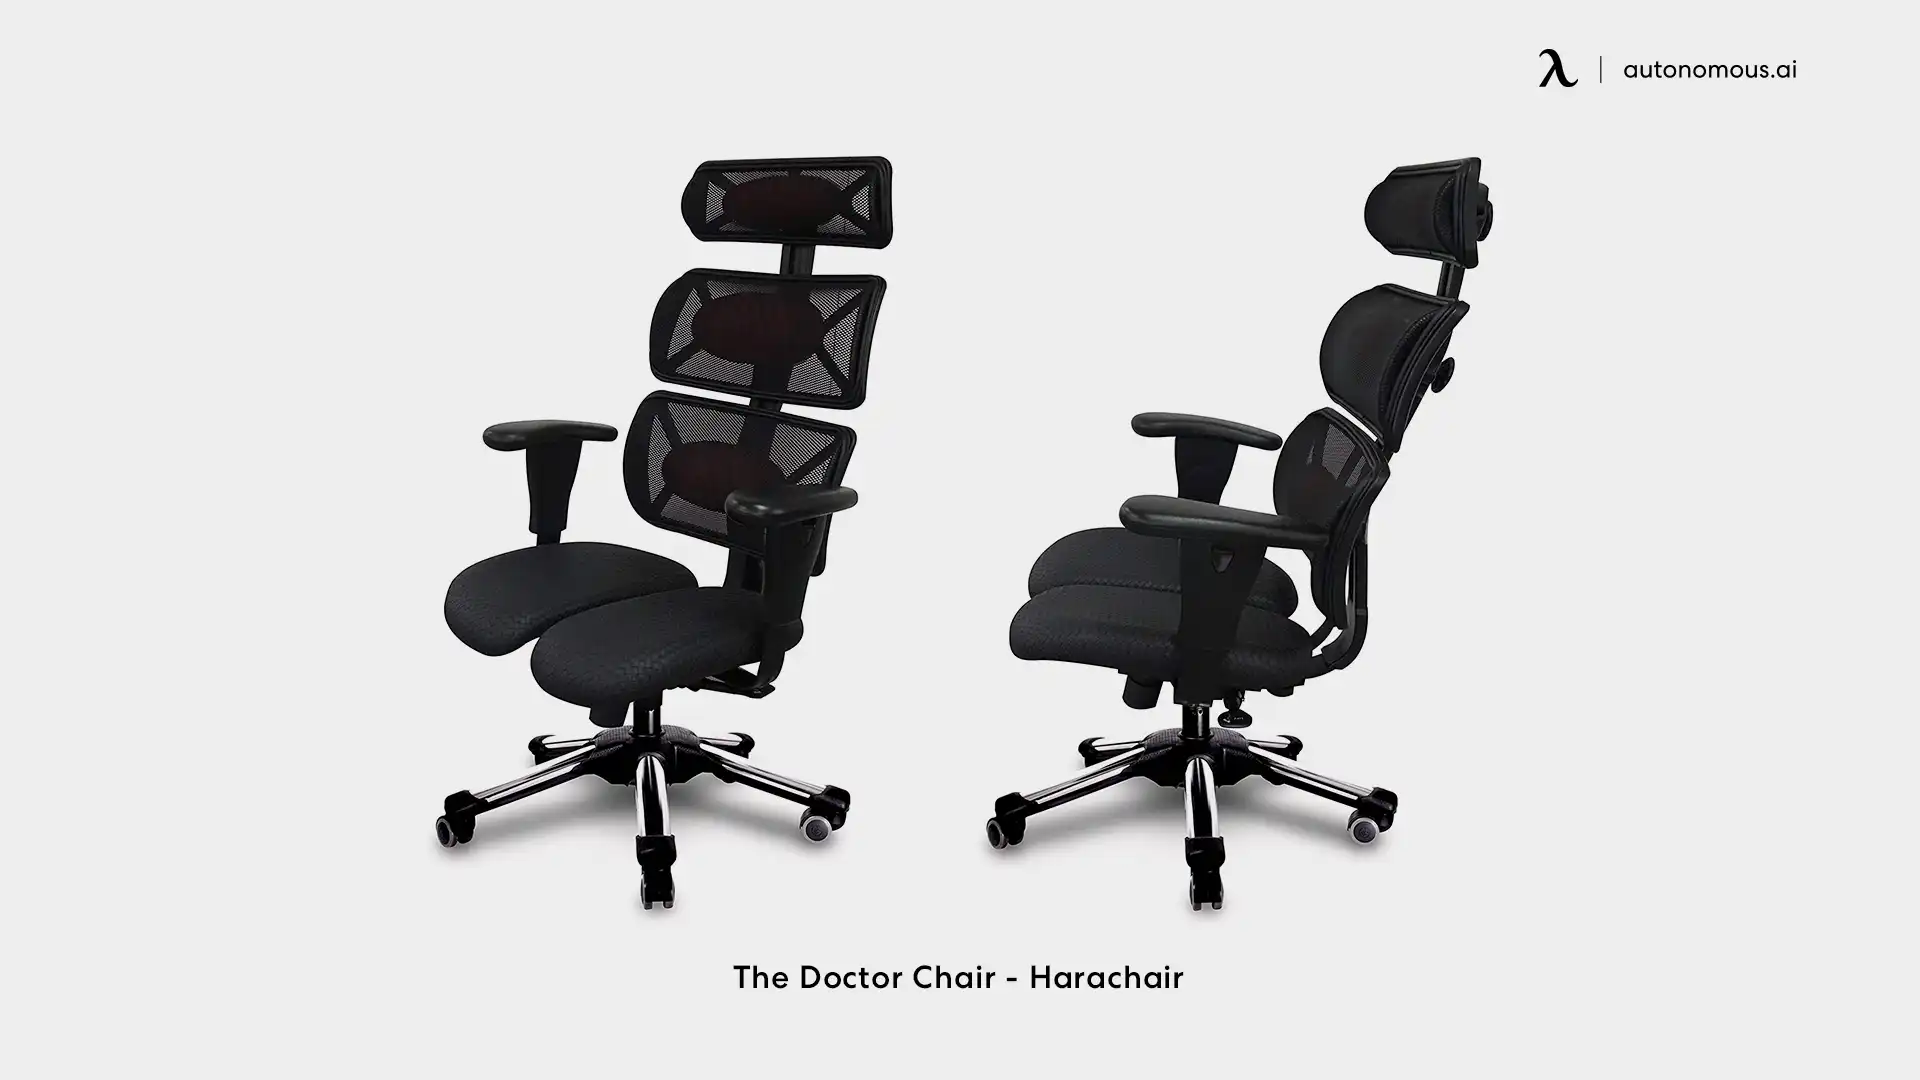 The Harachair Doctor Chair